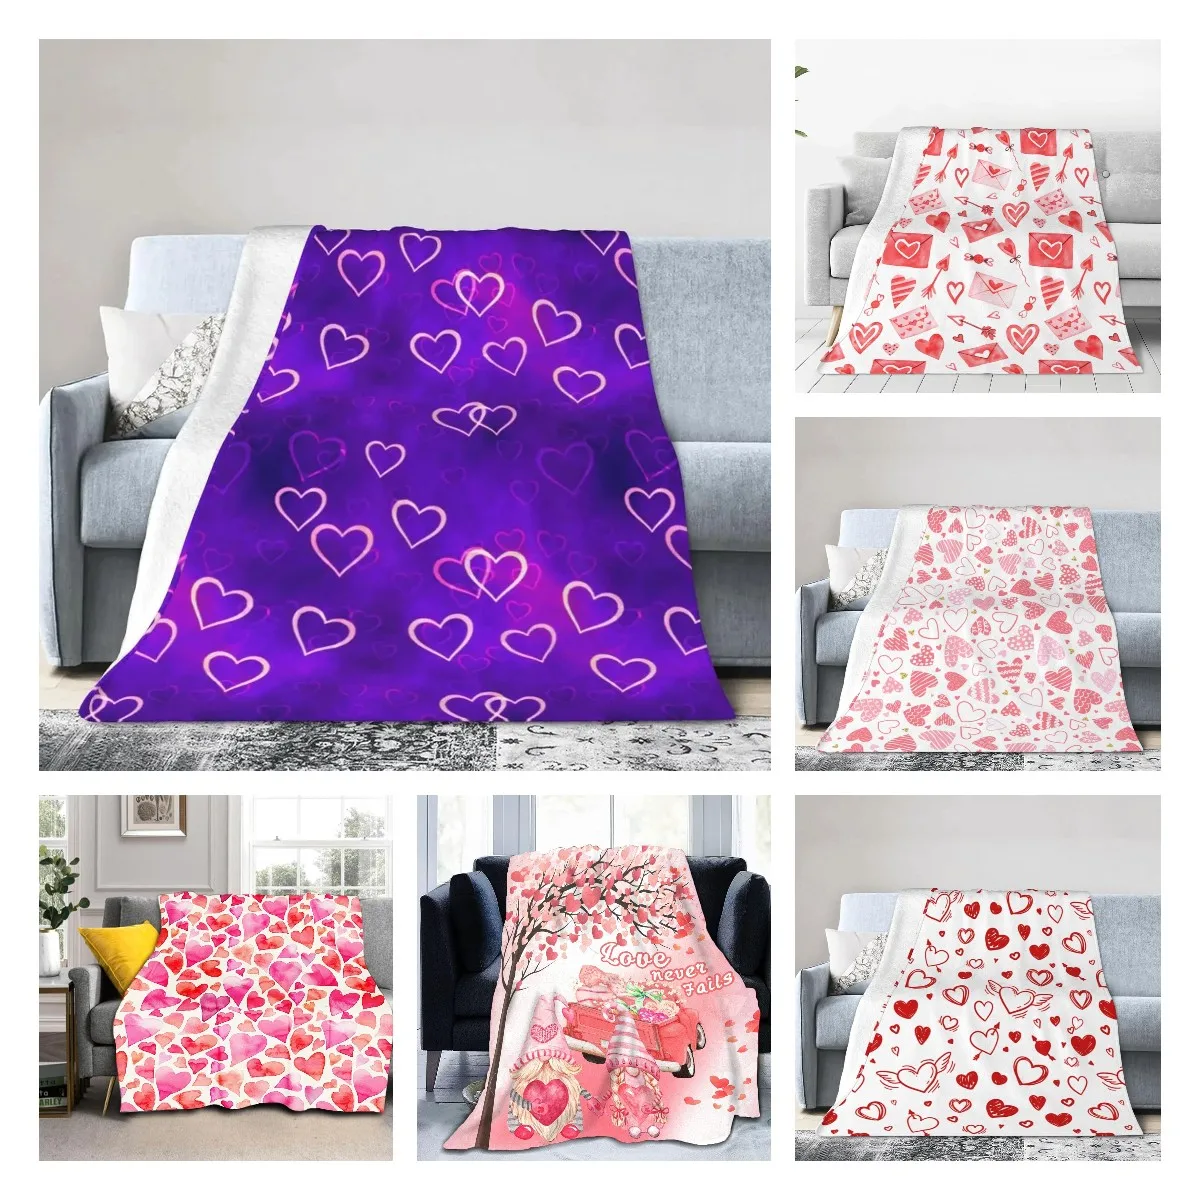 

Теплое фланелевое одеяло в виде сердца, фиолетового цвета